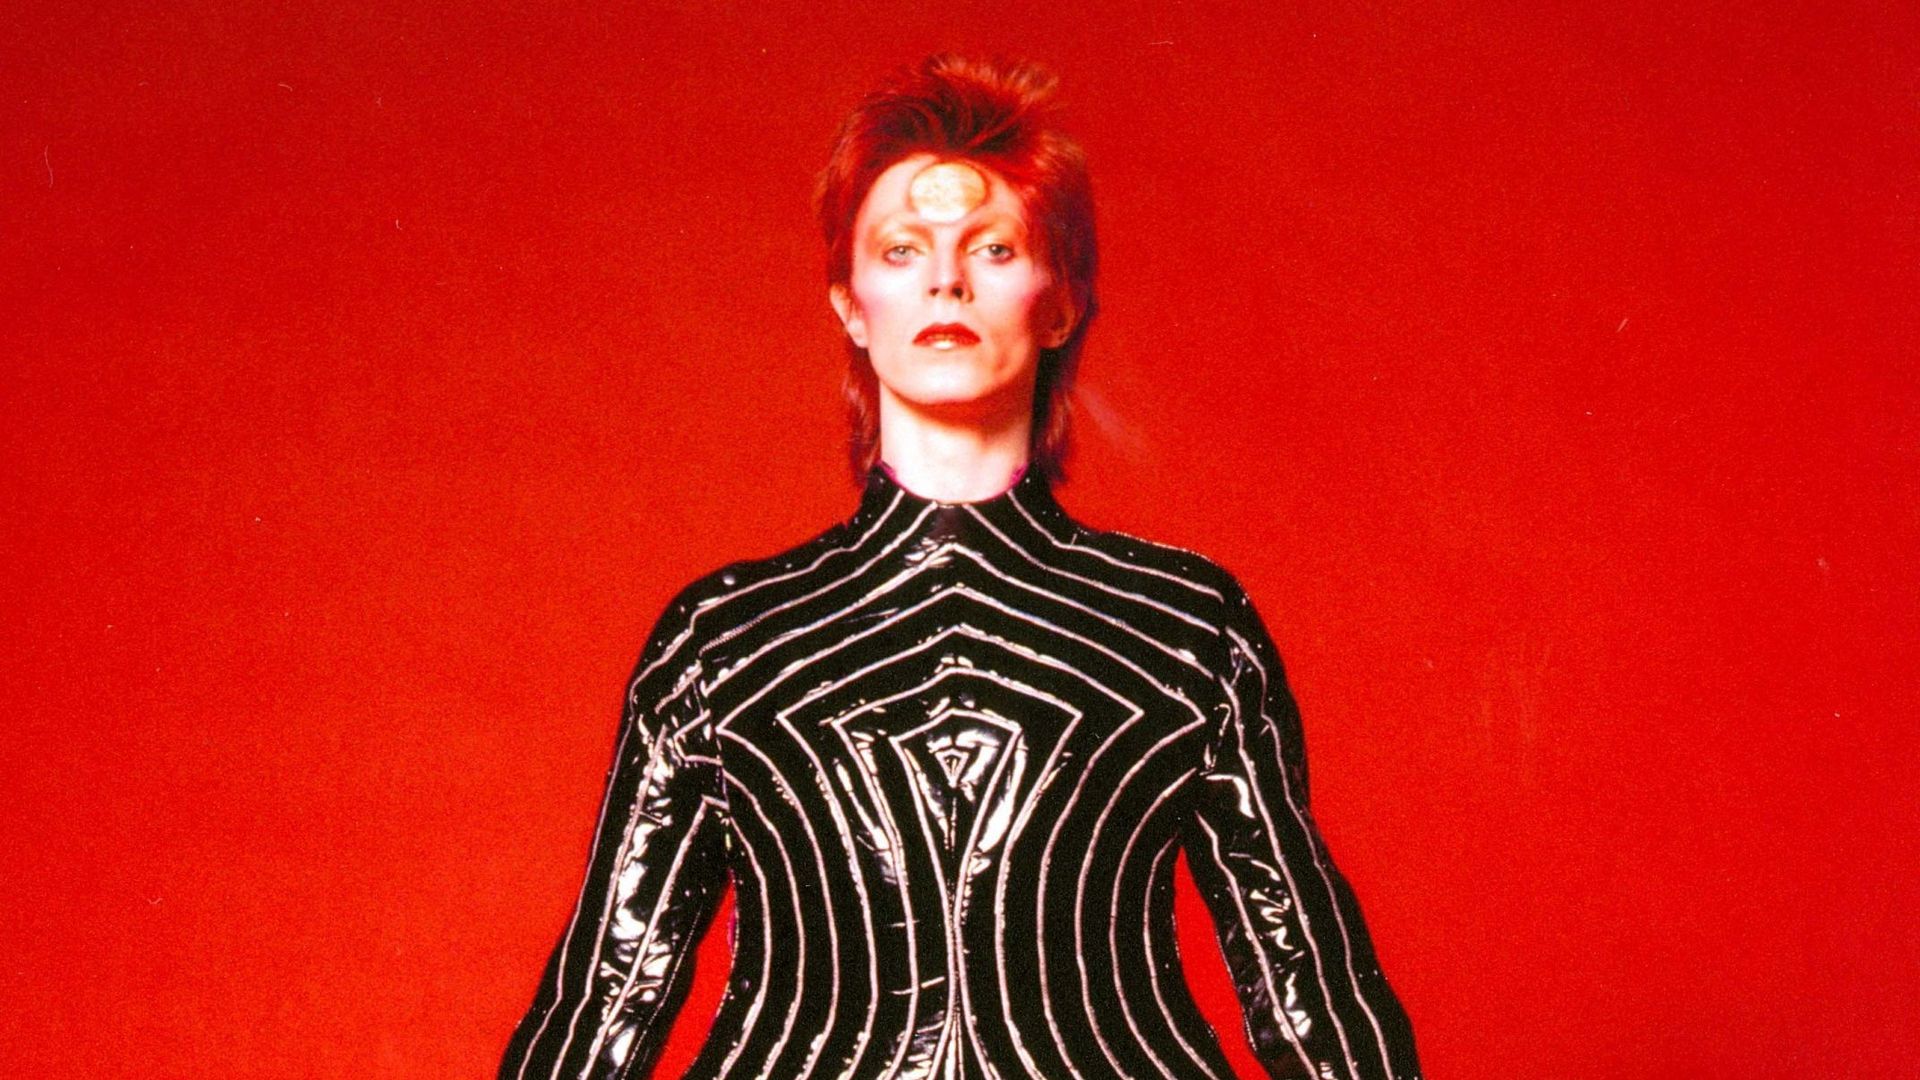 Le programme s'ouvrira à la Philharmonie de Paris avec une exposition David Bowie